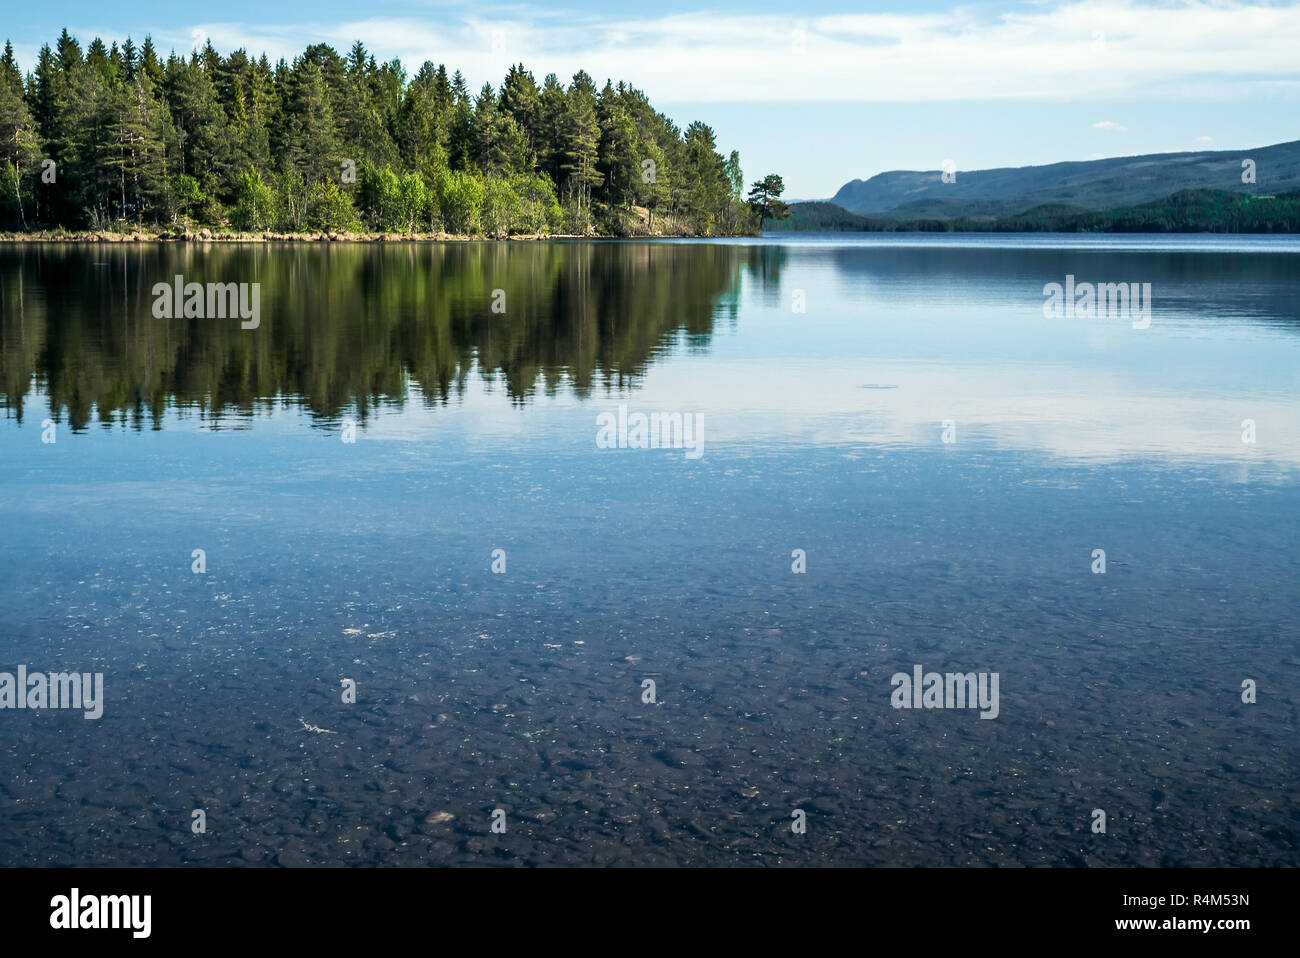 Una tranquila mañana de verano con vistas al tranquilo lago cristalino con guijarros en el fondo y verde bosque, reflejado en la superficie del agua Foto de stock